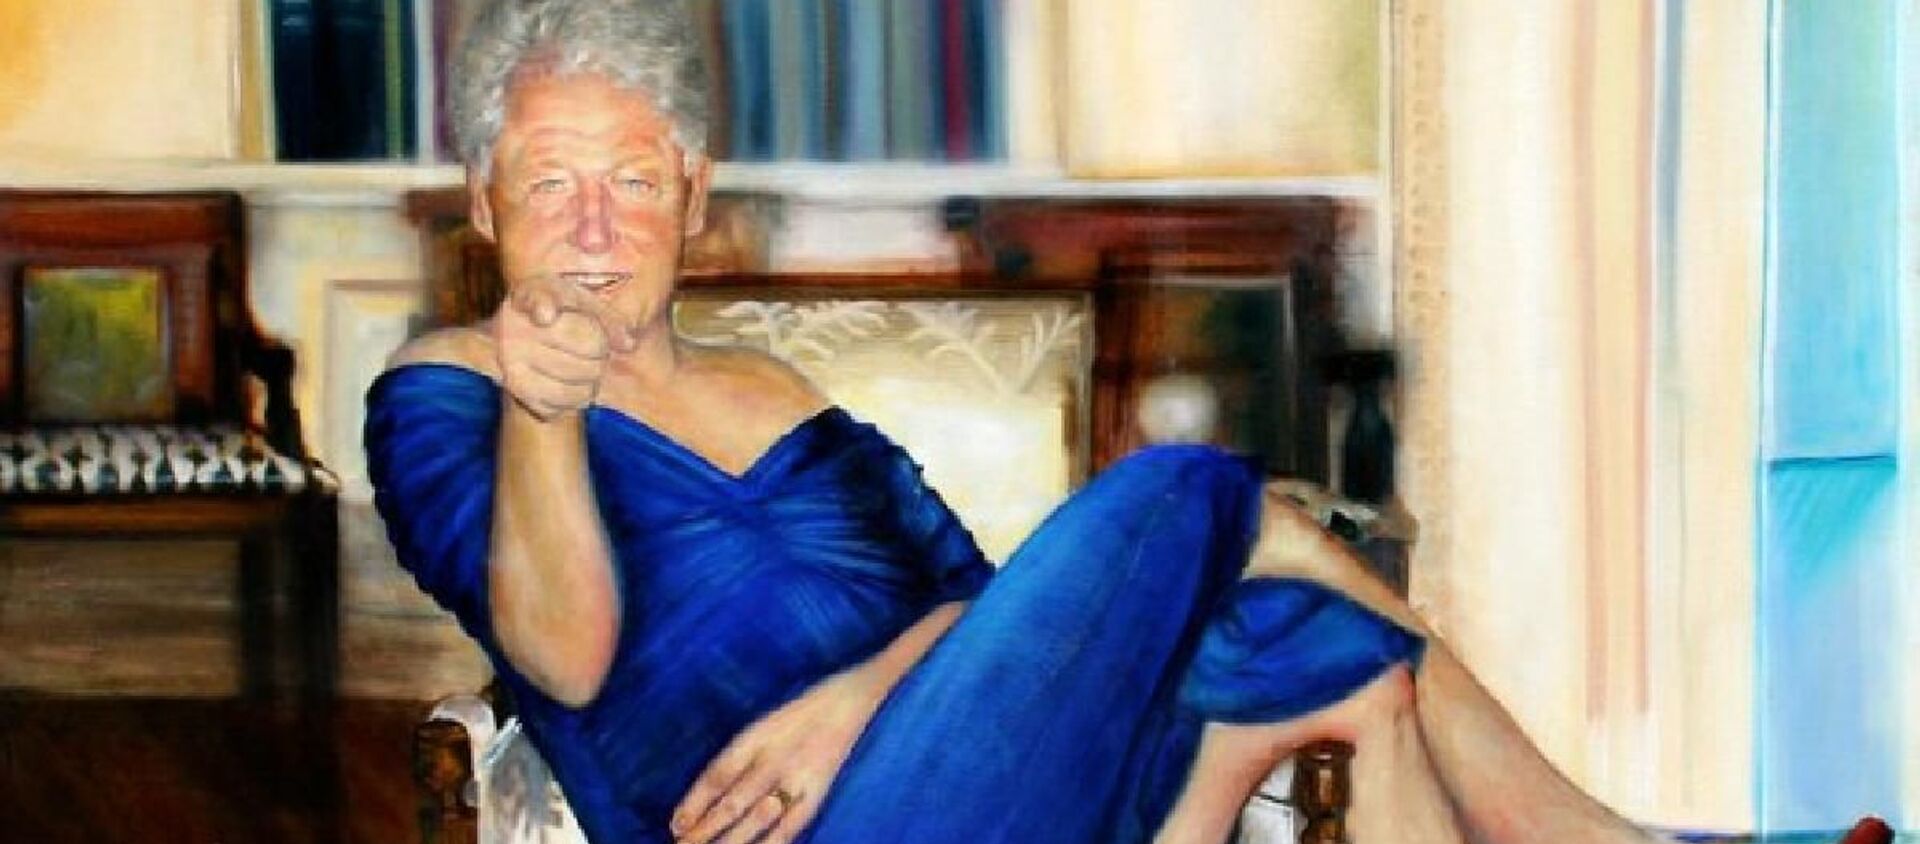 Epstein'in evinde bulunan kadın elbiseli Bill Clinton tablosu - Sputnik Türkiye, 1920, 16.08.2019